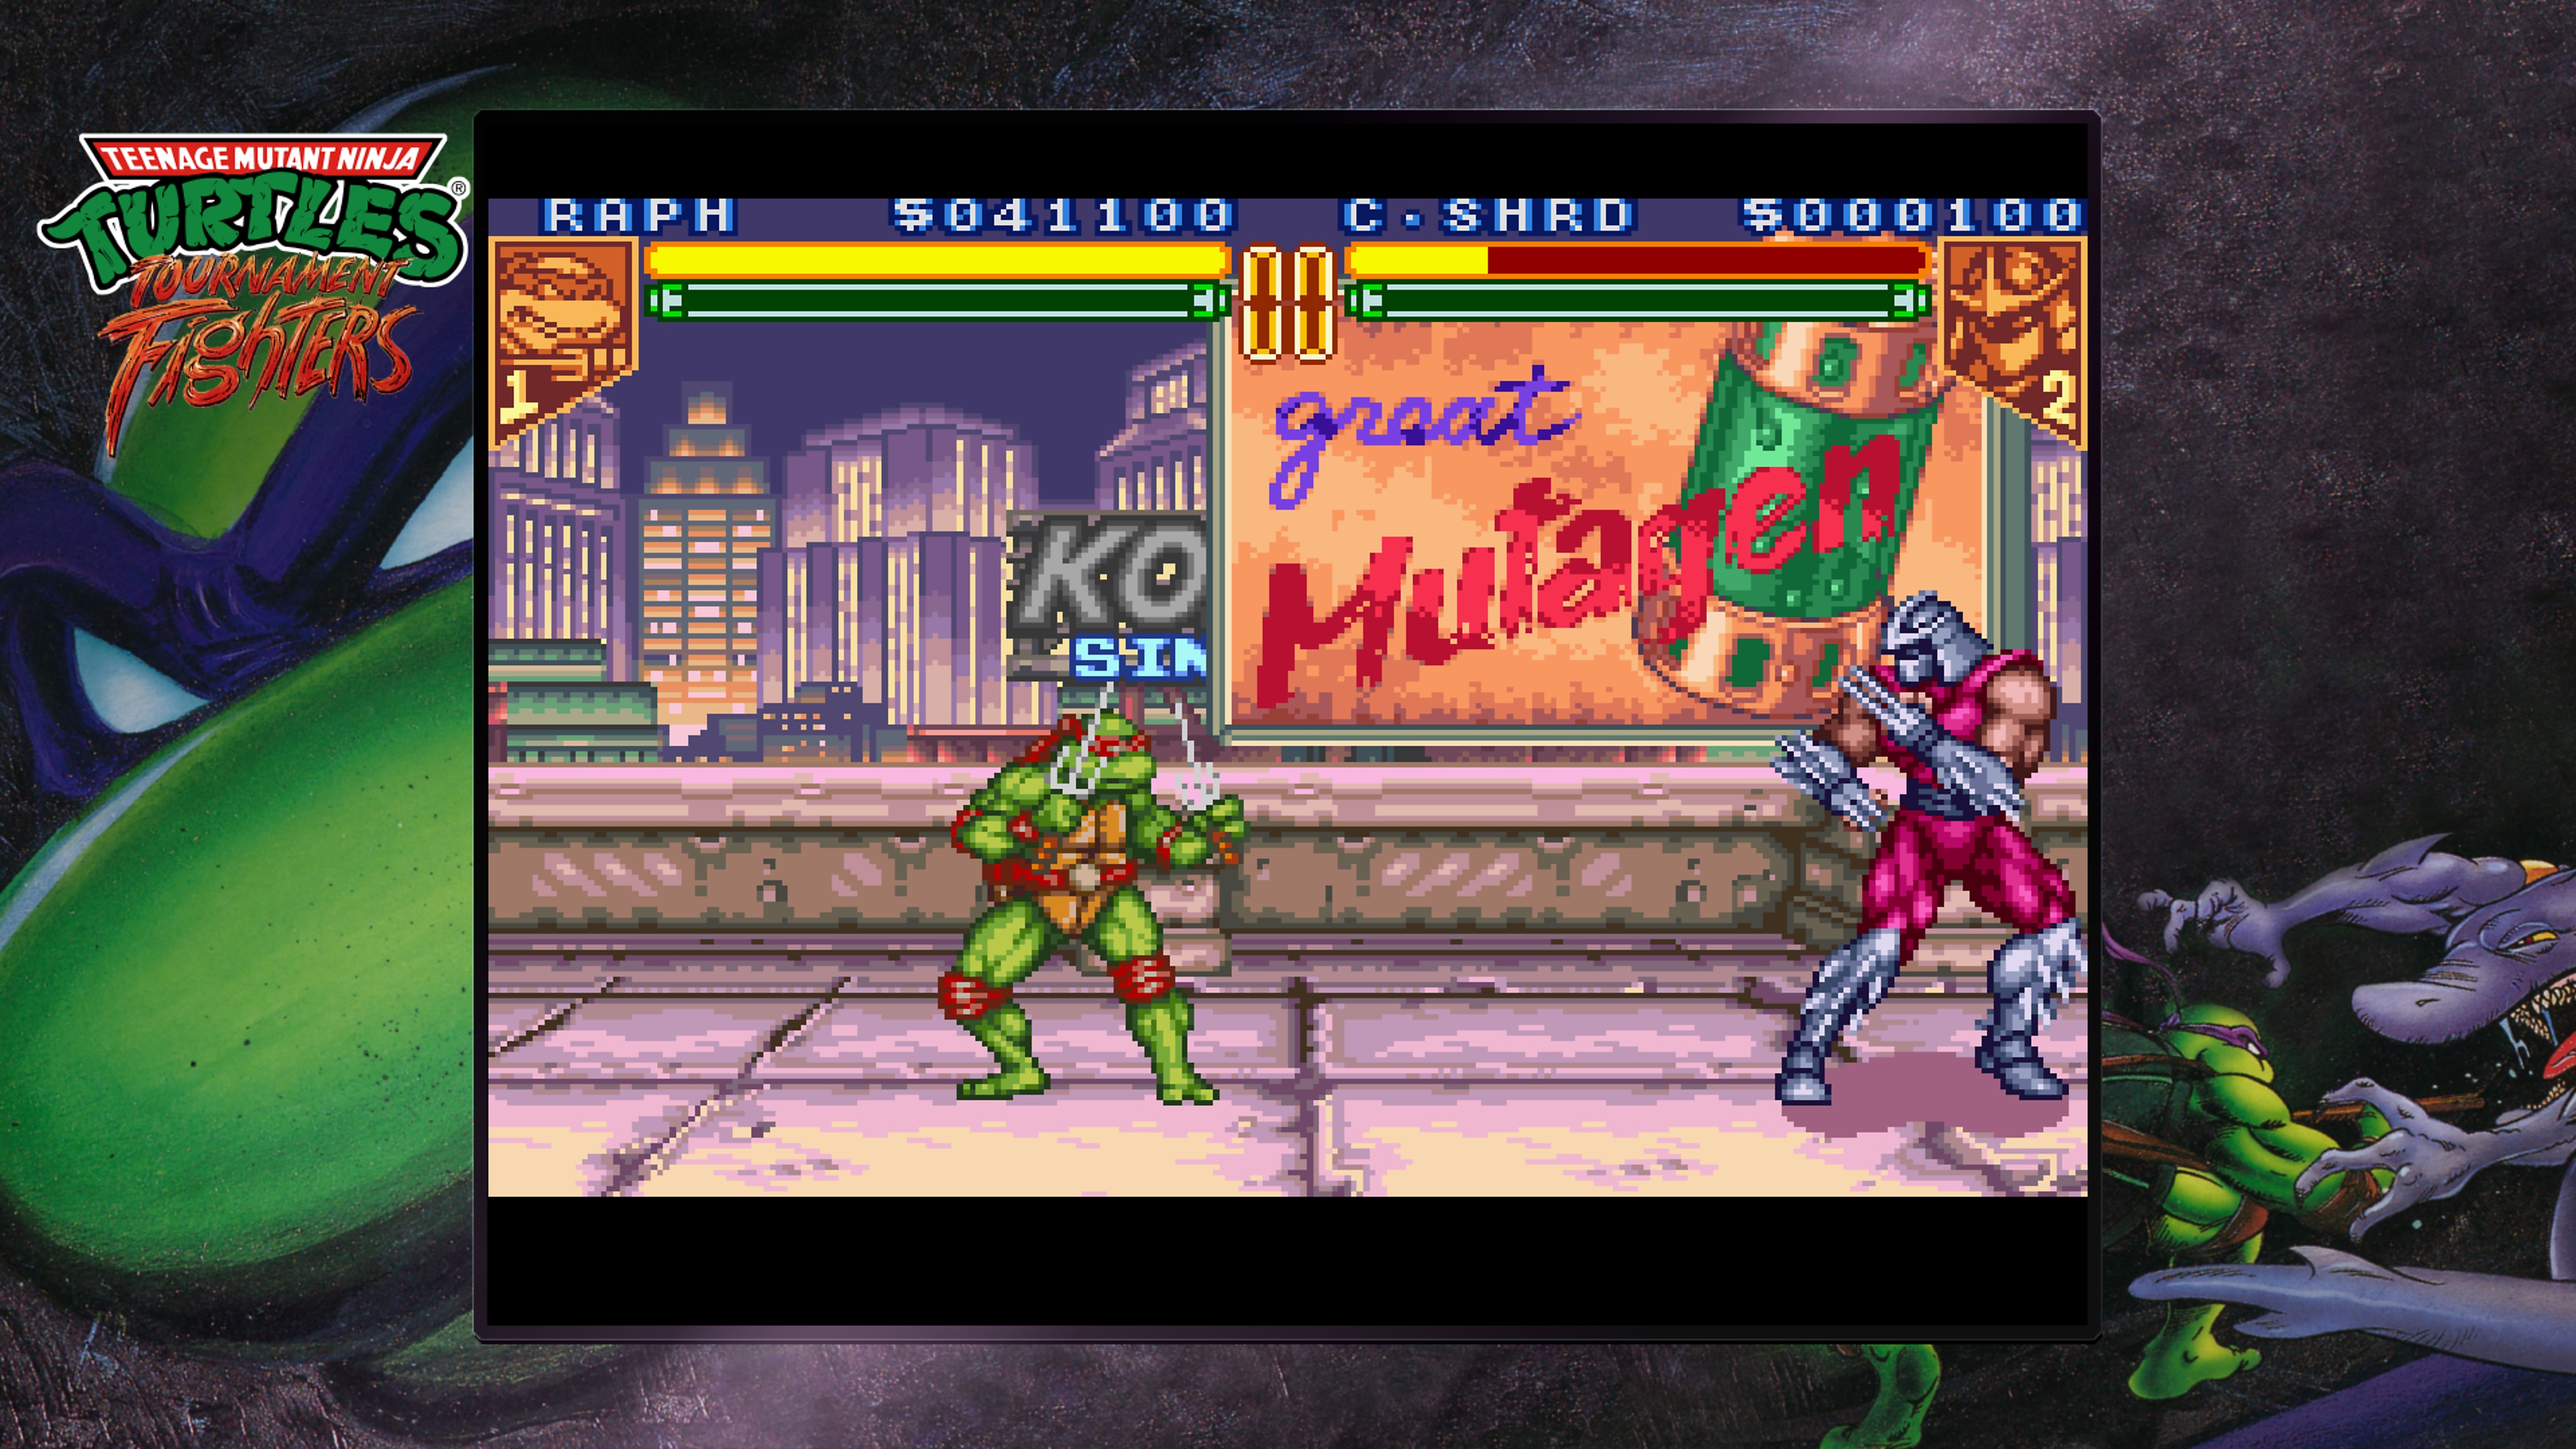 Kolekcja Teenage Mutant Ninja Turtles – zrzut ekranu Tournament Fighters pokazujący Raphaela walczącego ze Shredderem na dachu